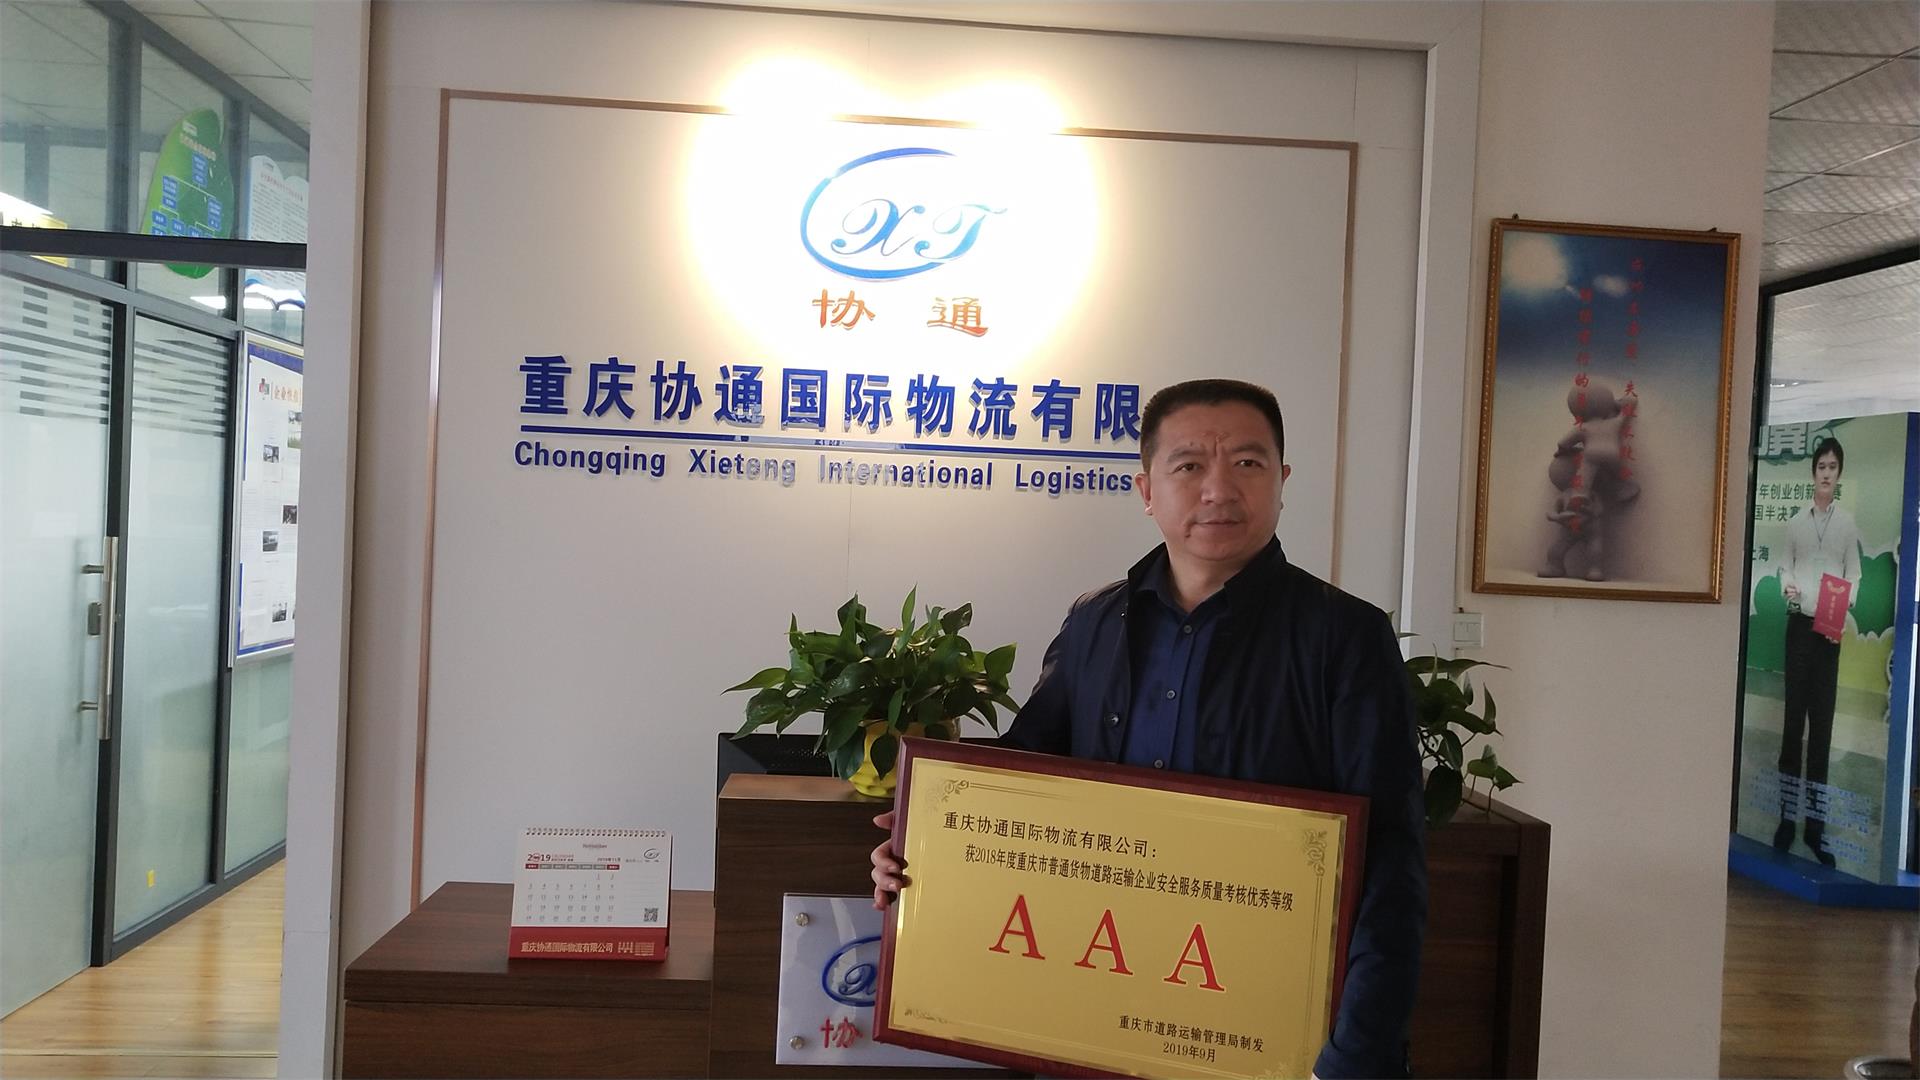 热烈祝贺重庆协通国际物流荣获 2018年重庆市普通货物道路运输企业安全服务质量考核优秀等级“AAA”